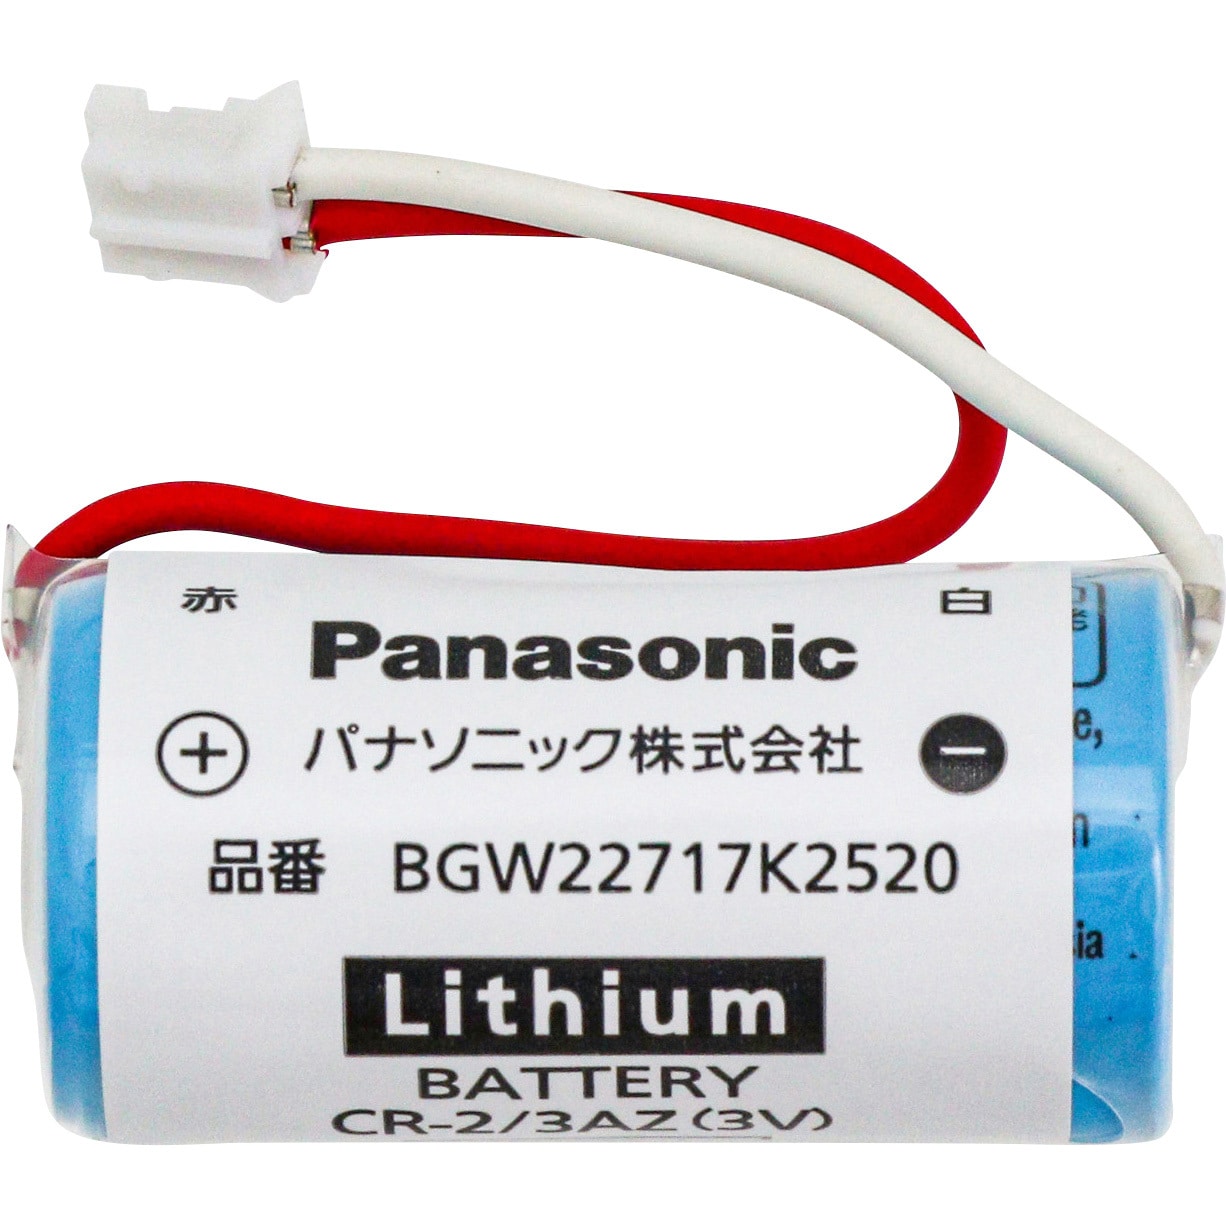 今日の超目玉】 Panasonic パナソニック カメラ用リチウム電池 CR-P2 rmladv.com.br